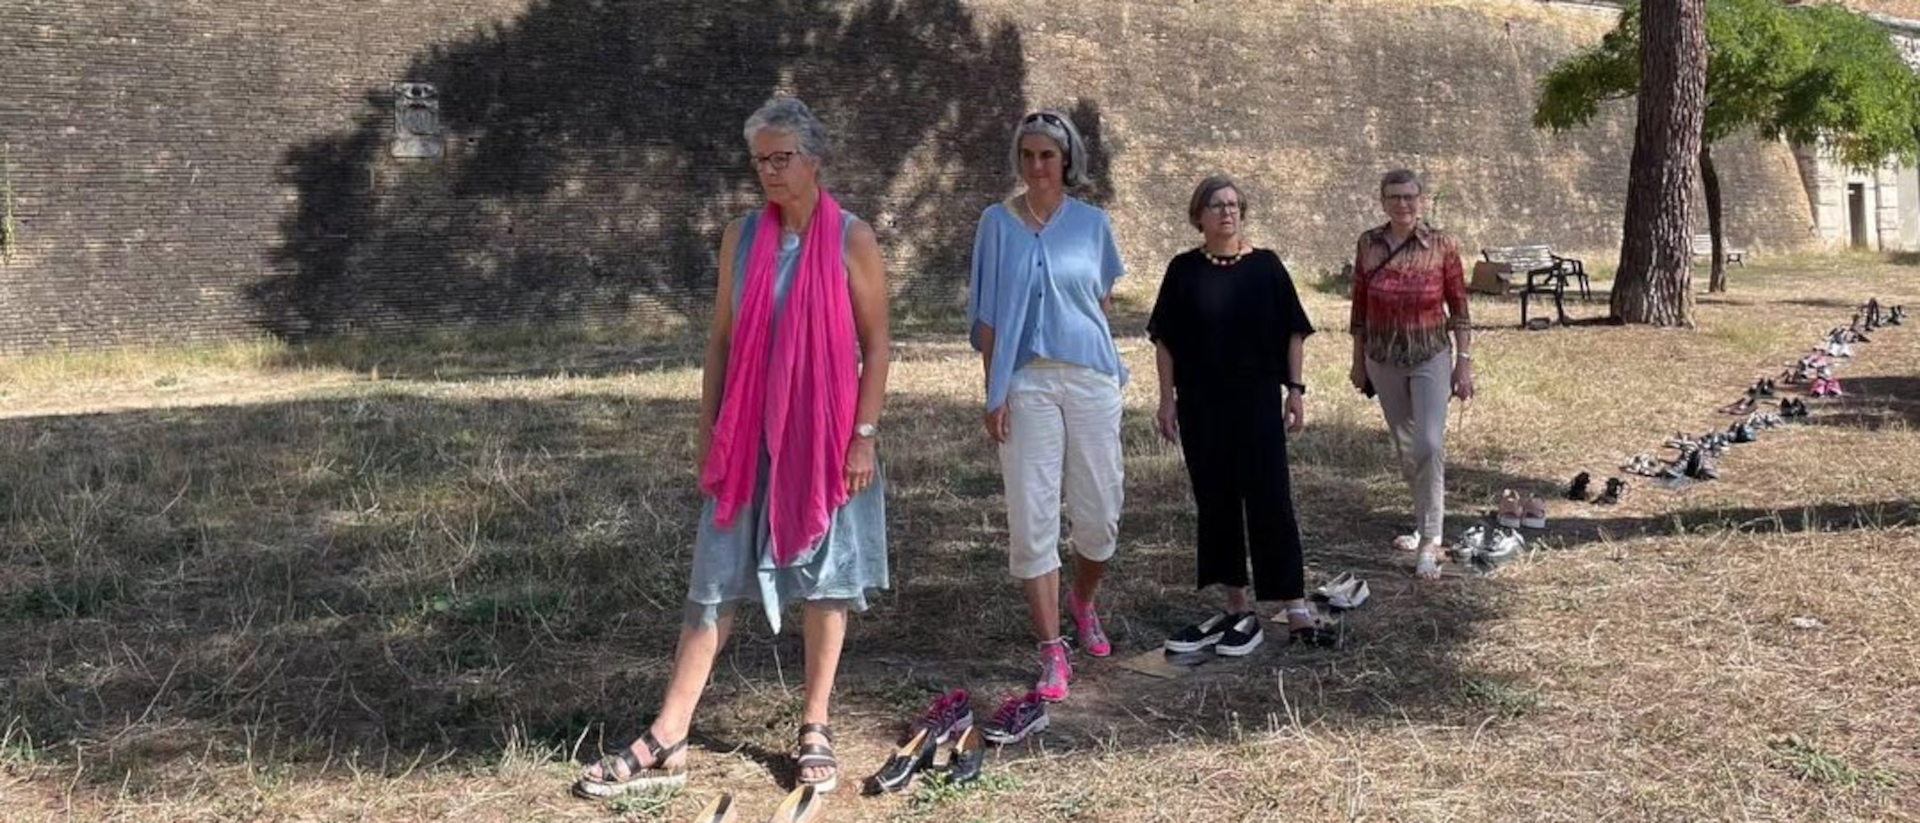 Die Aktion "Walk in her Shoes" von katholischen Frauenverbänden in Rom.